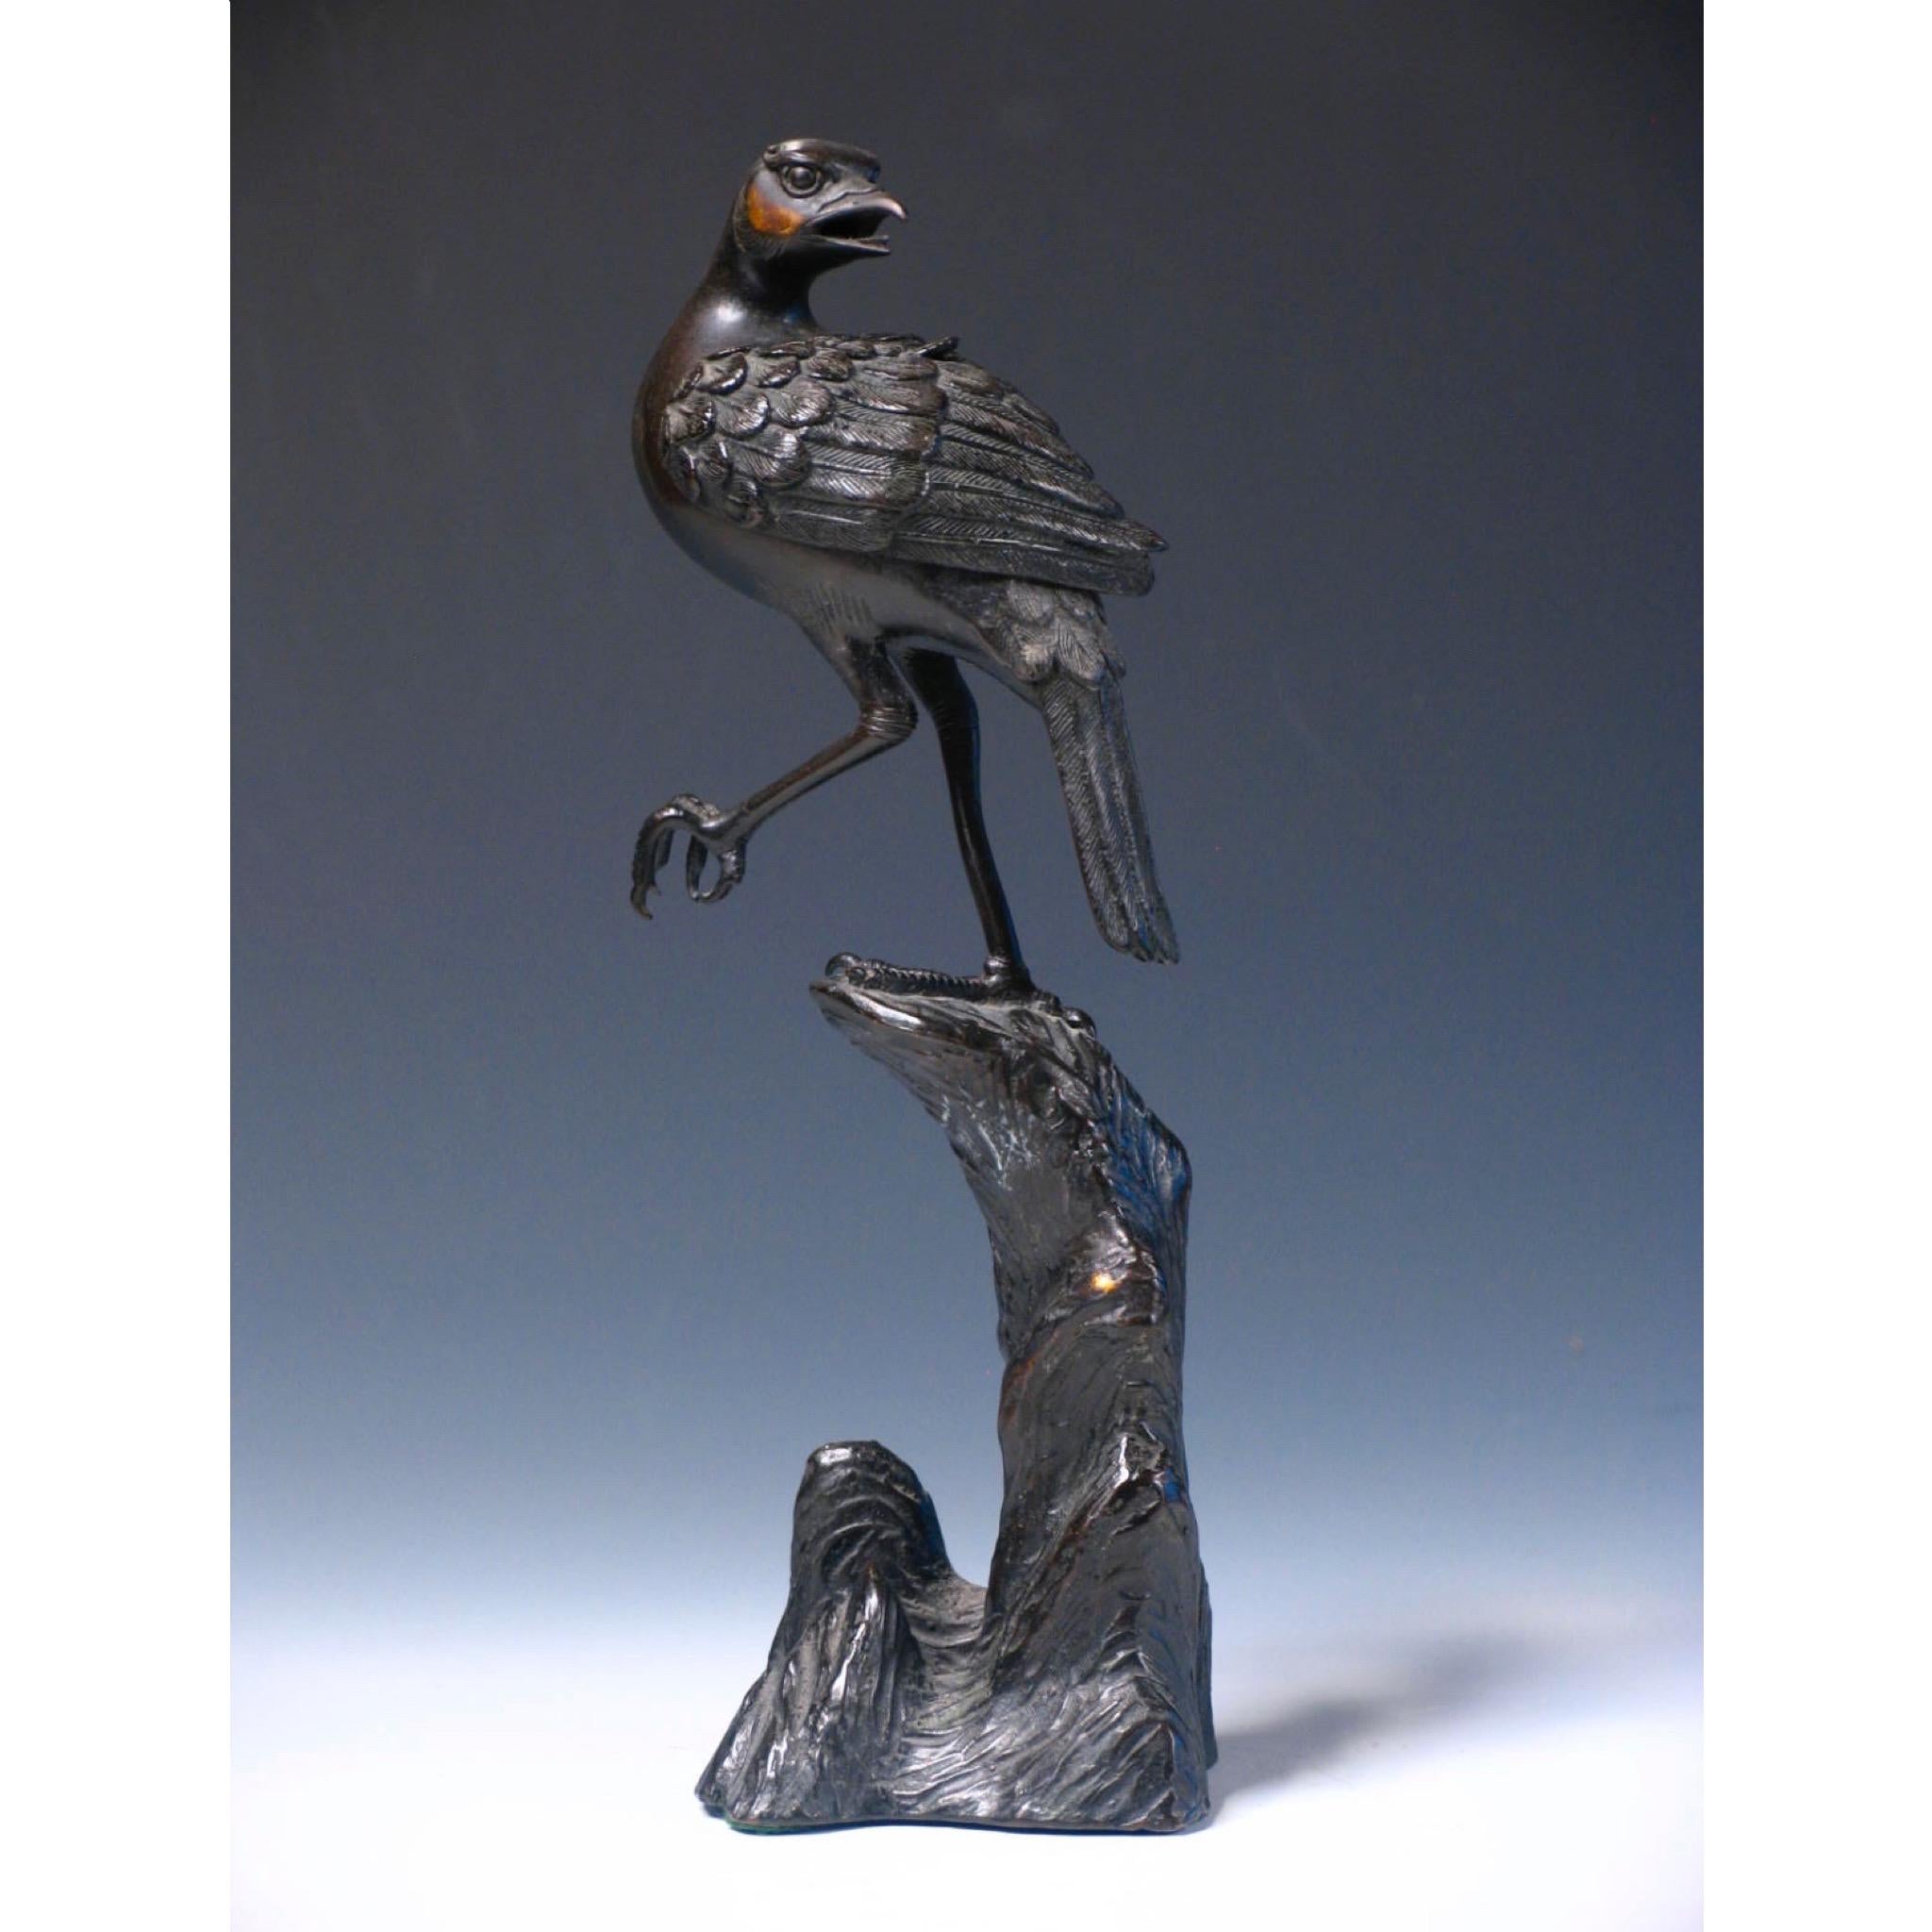 Brûle-parfum japonais ancien en bronze, en forme d'oiseau perché sur un pied sur un haut rocher, la tête de l'oiseau regardant en arrière, la bouche ouverte et les ailes amovibles percées révélant la chambre à encens, le pied gauche partiellement